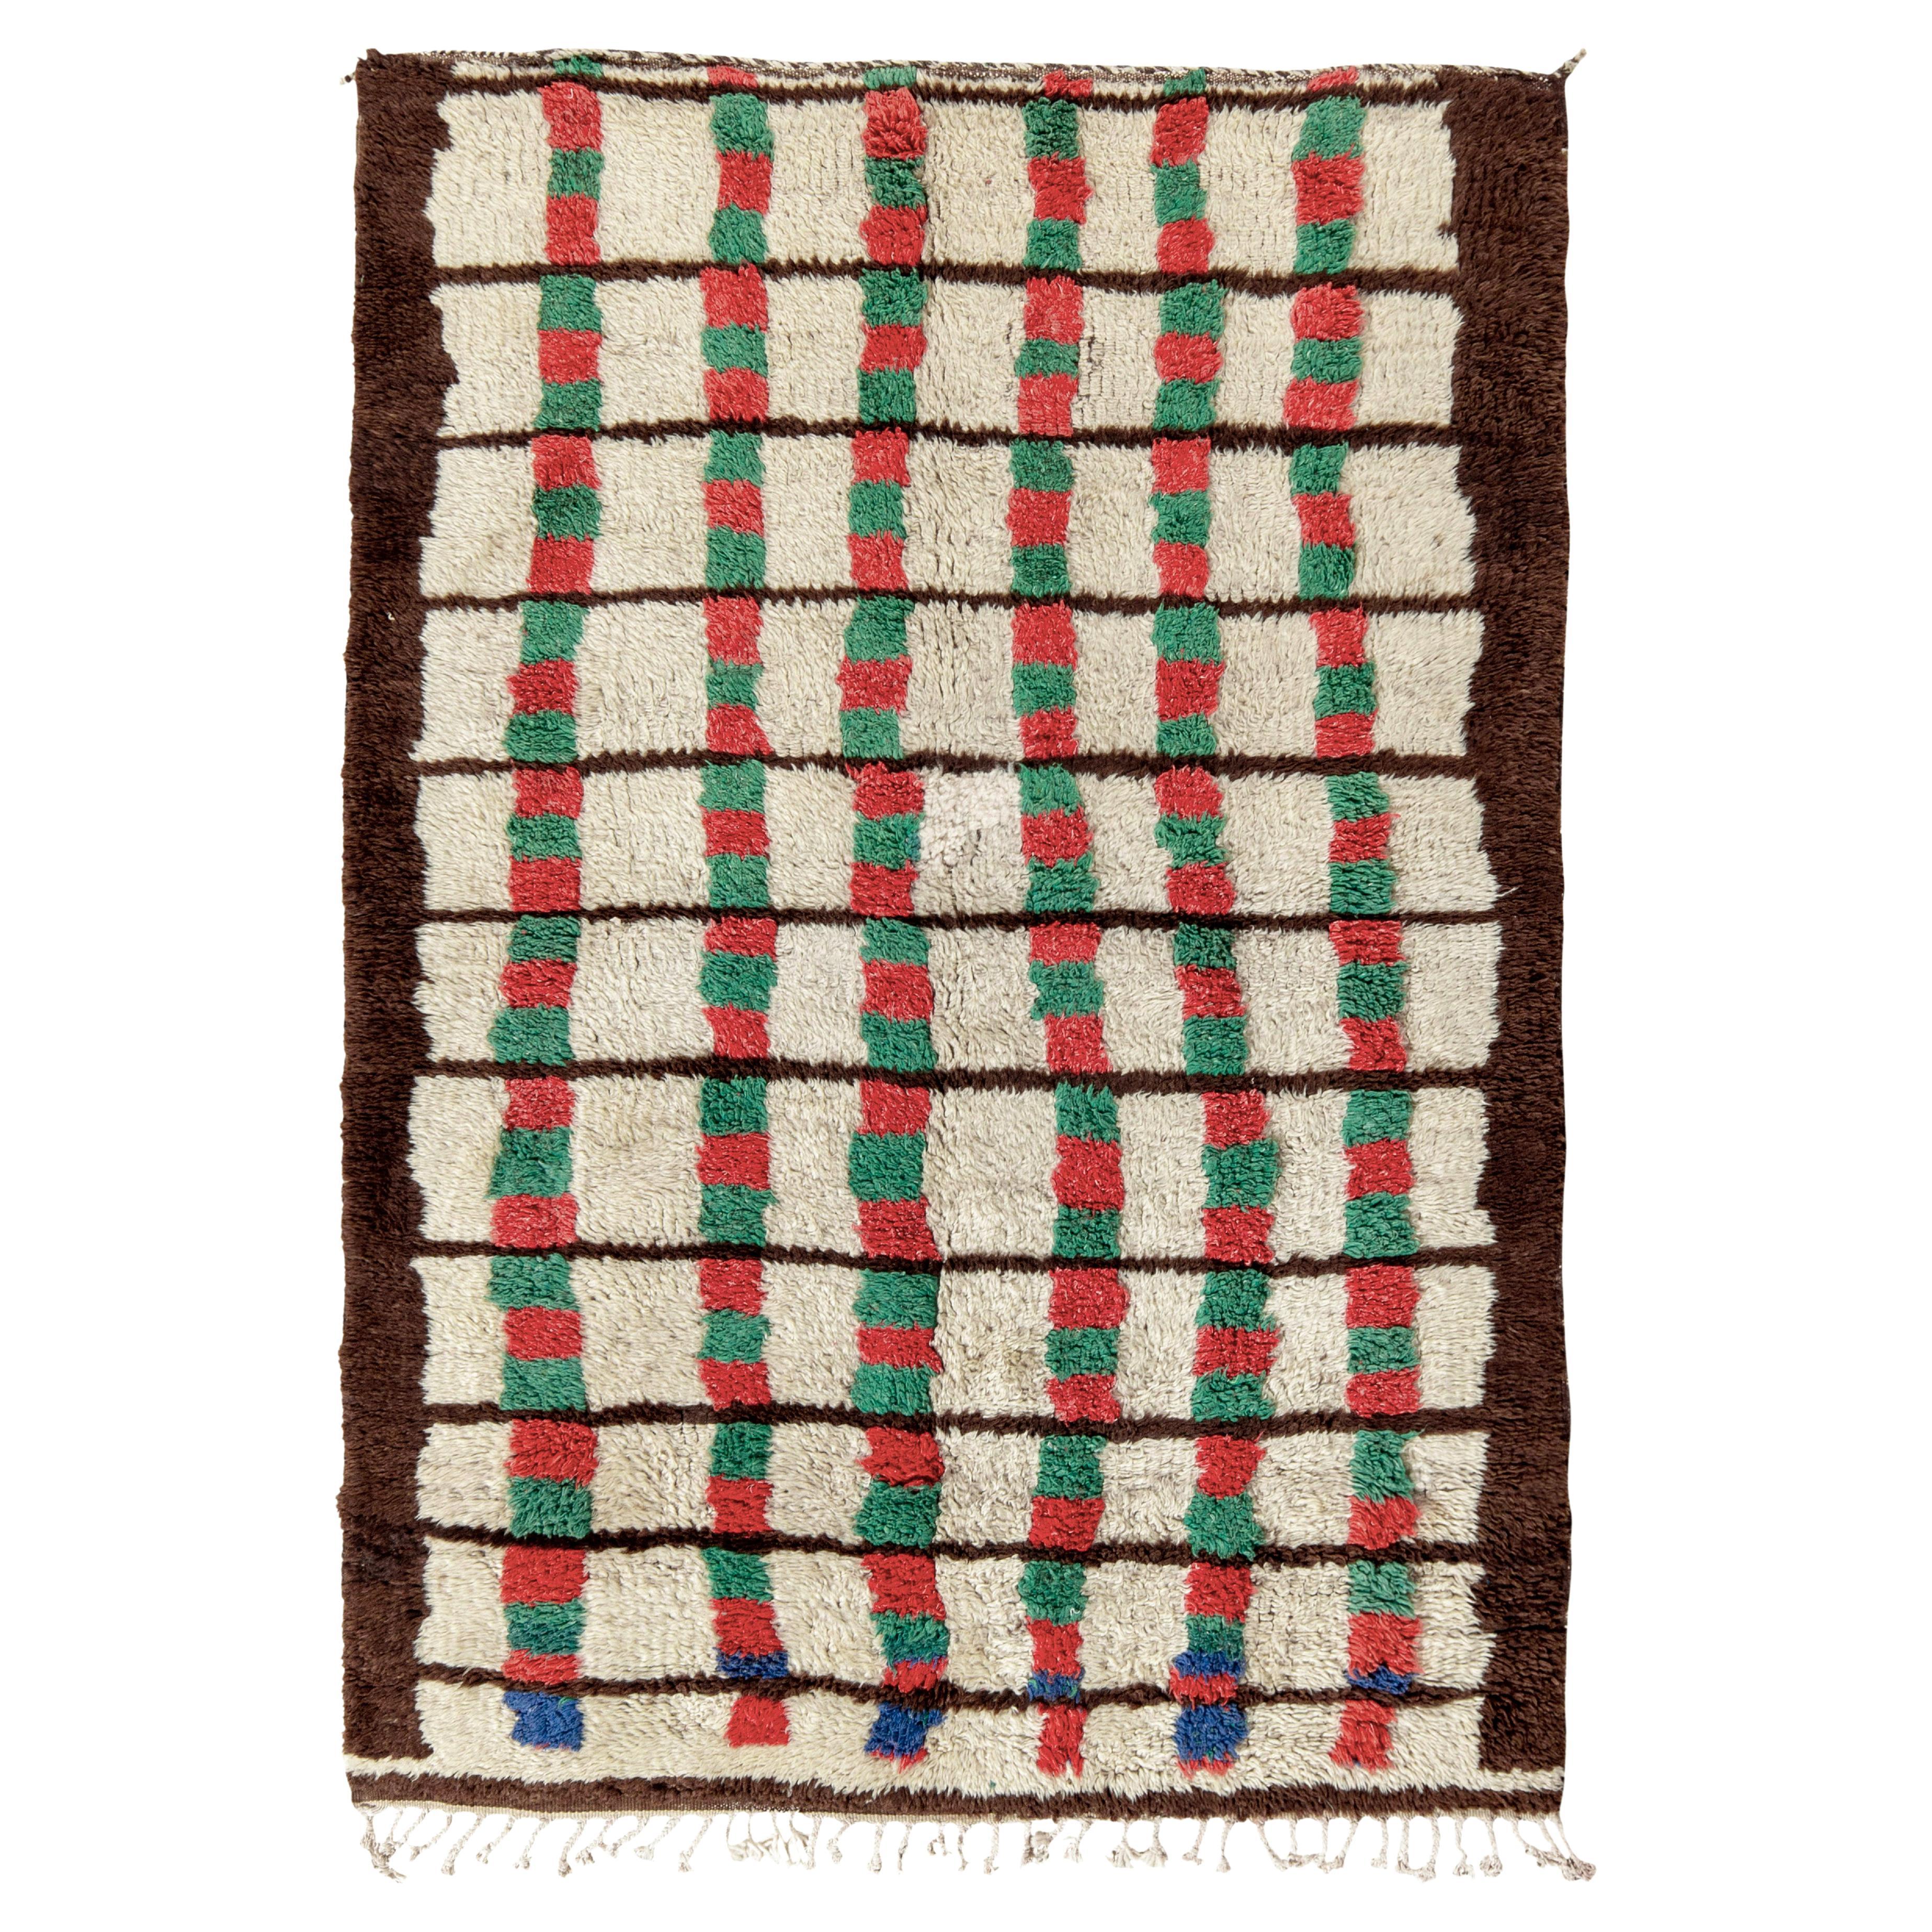 Vintage Berber Moroccan Rug in Beige-Brown, Geometric Pattern by Rug & Kilim